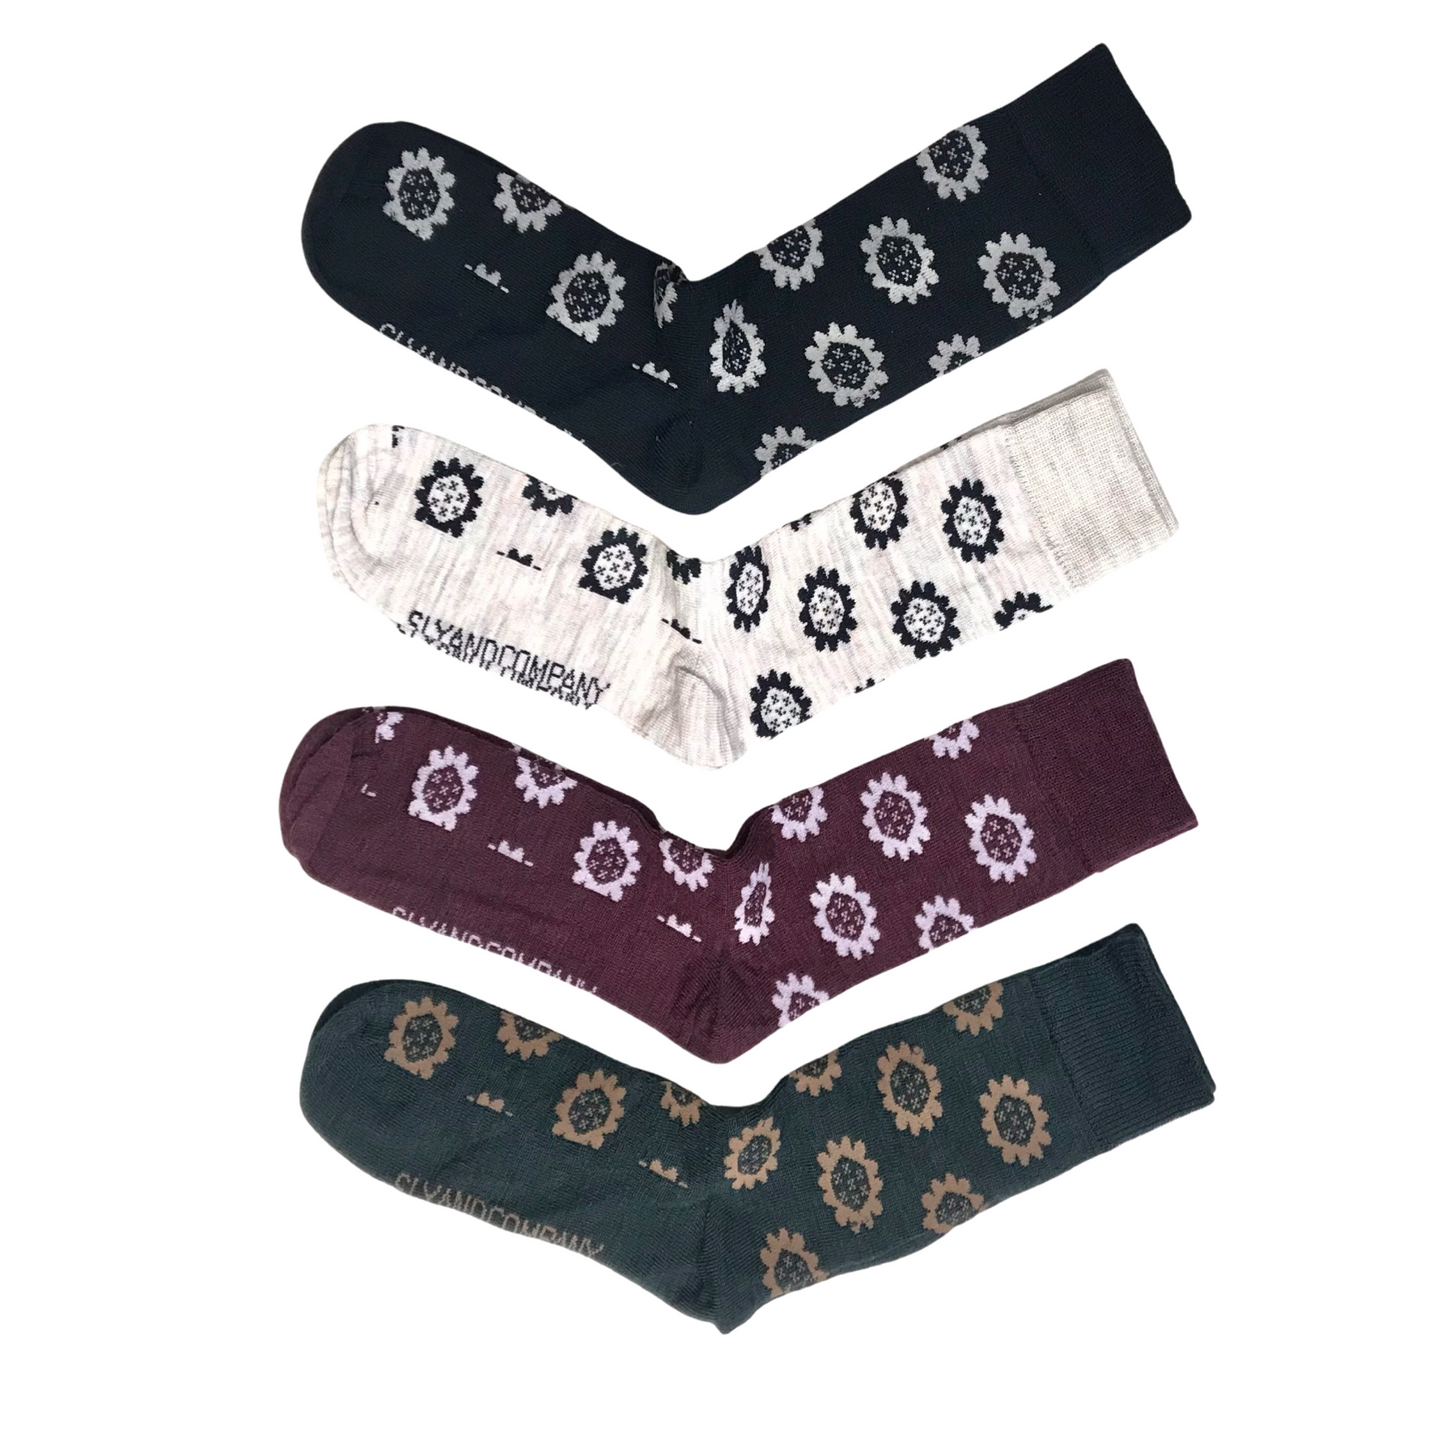 sly and company merino socks made in new zealand